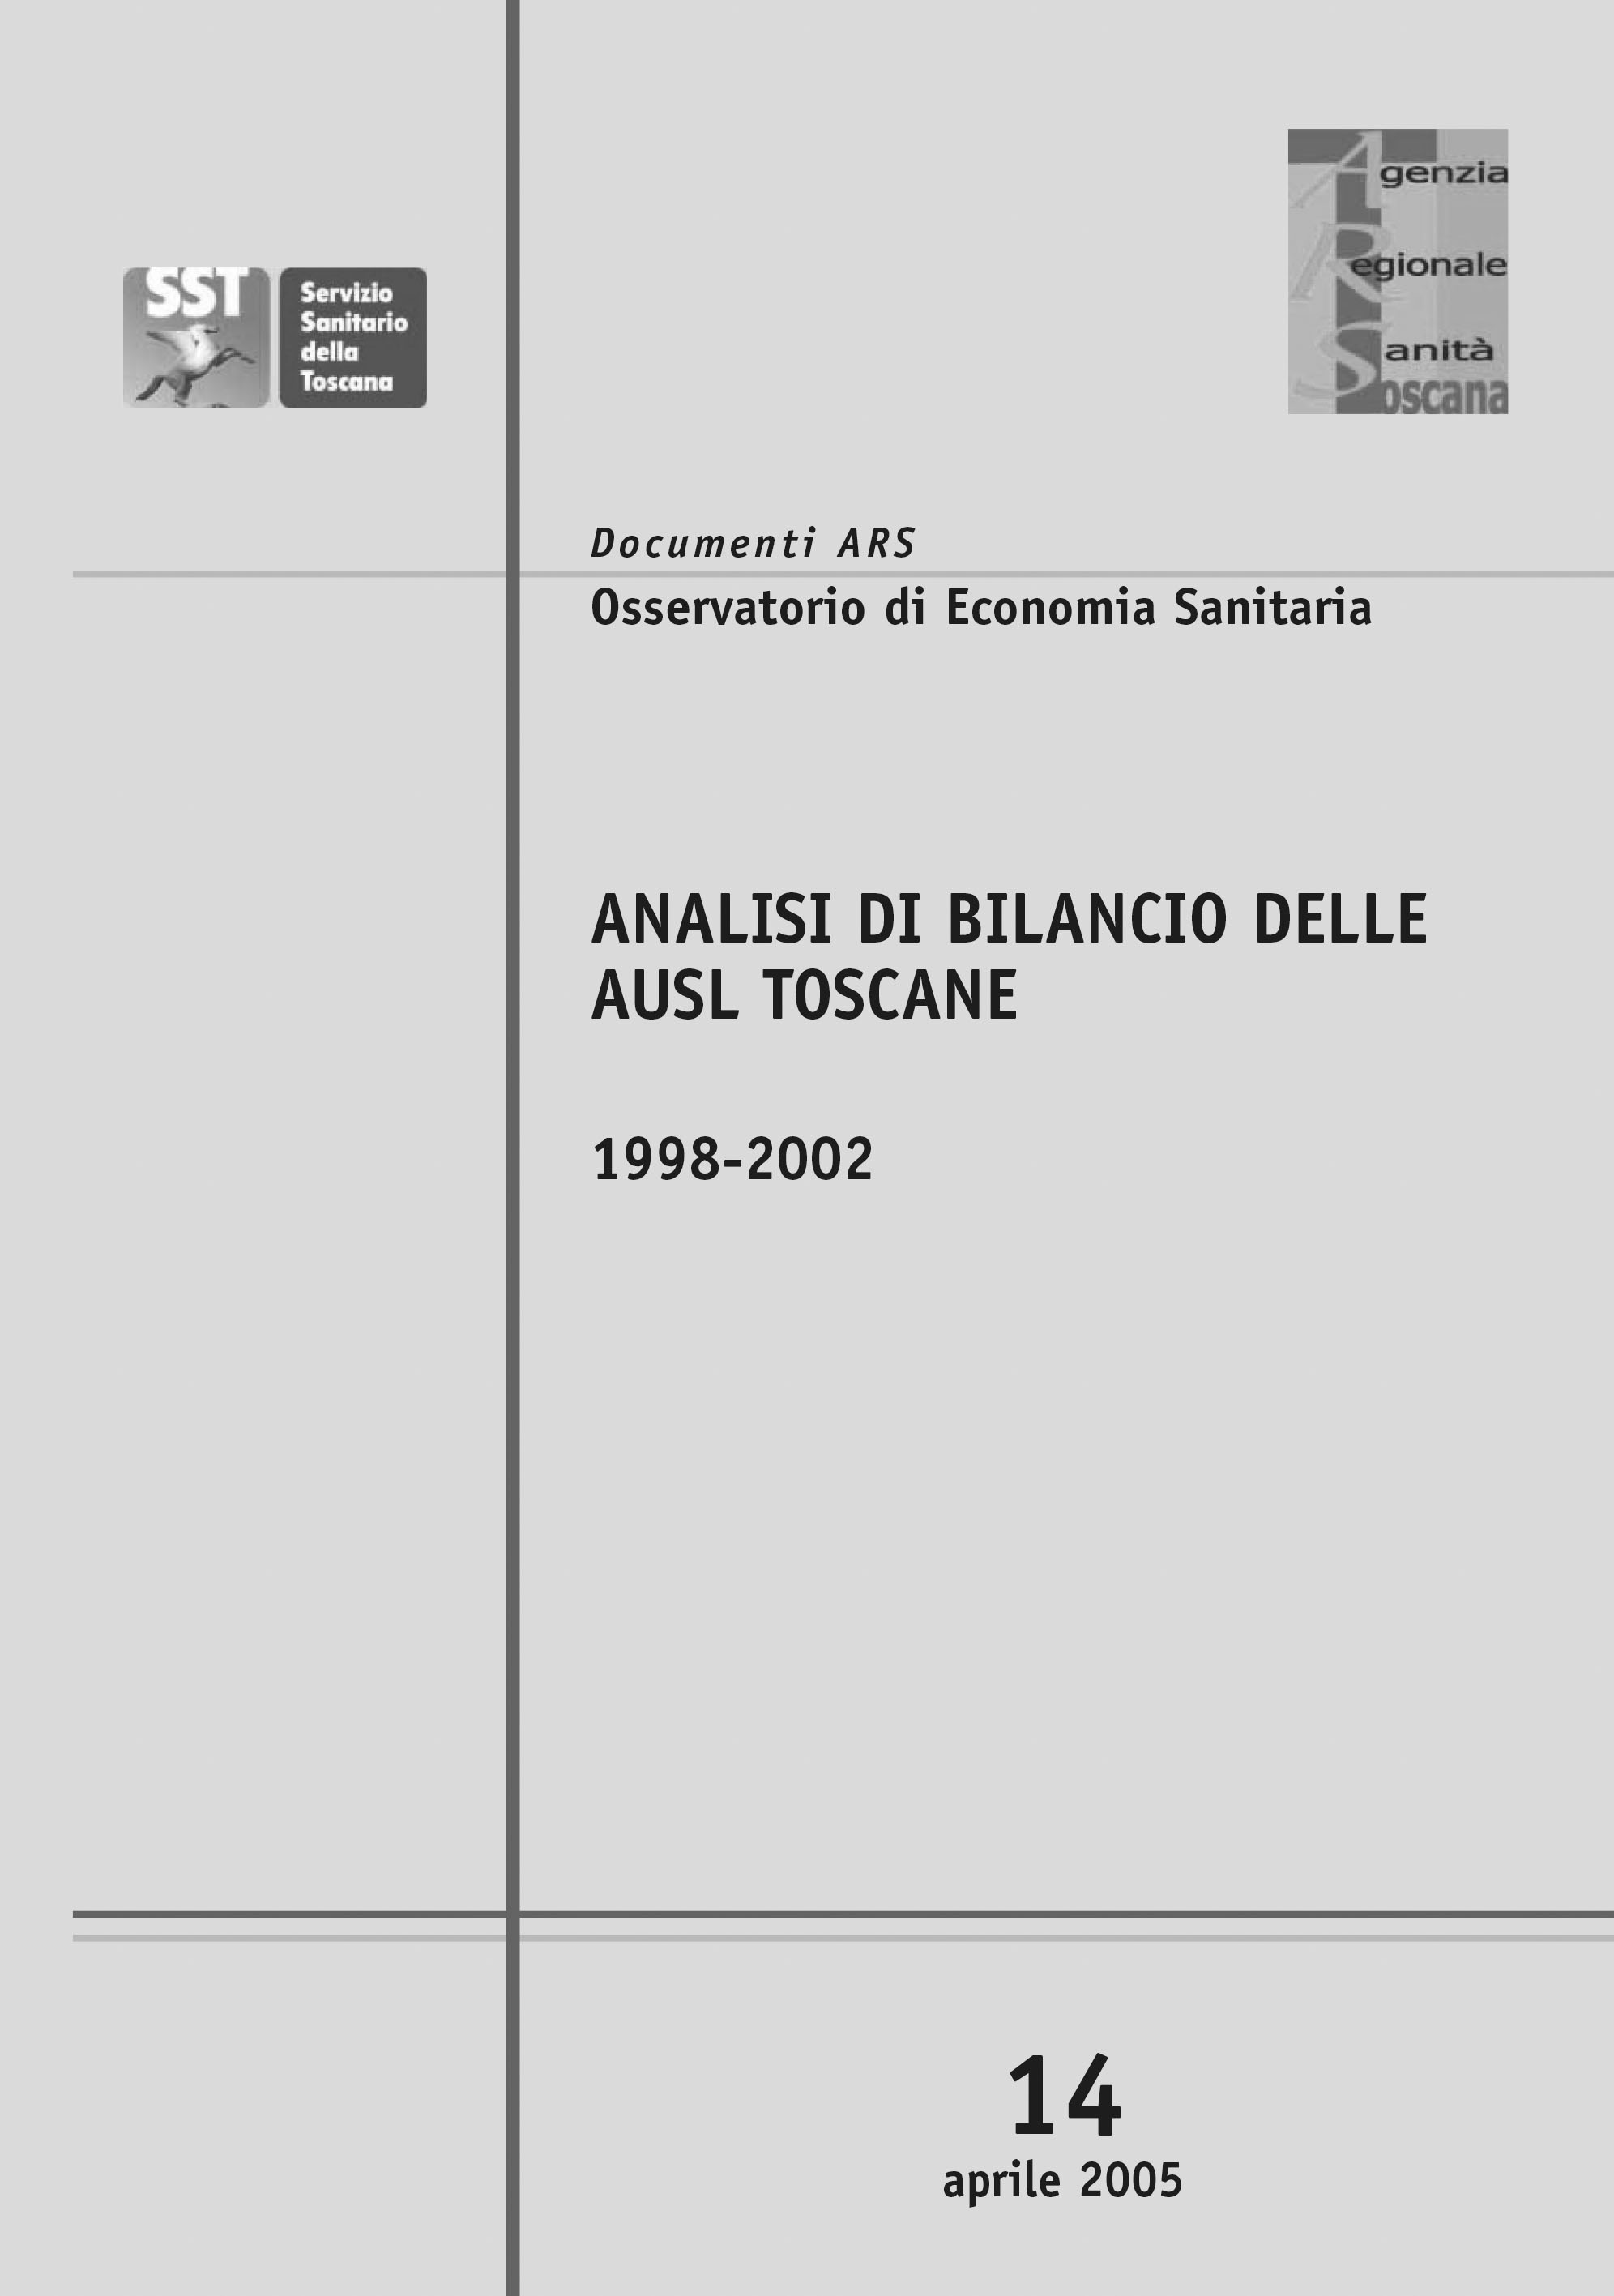 Analisi di bilancio delle AUSL toscane 1998-2002